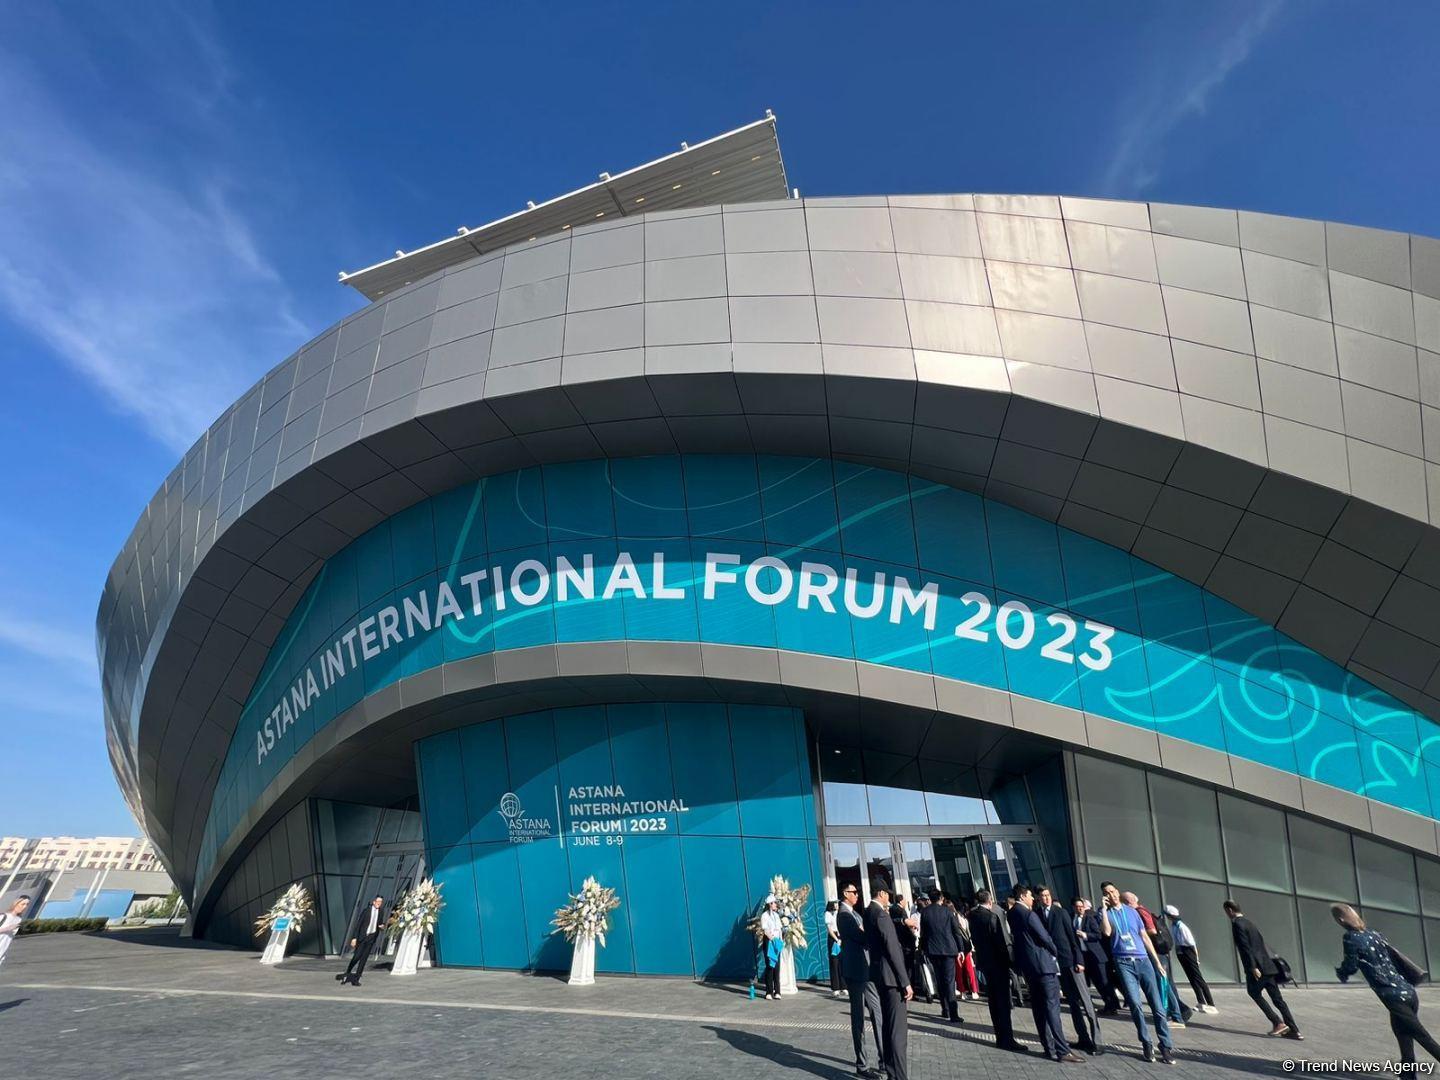 Astana International Forum Kicks Off (PHOTO)